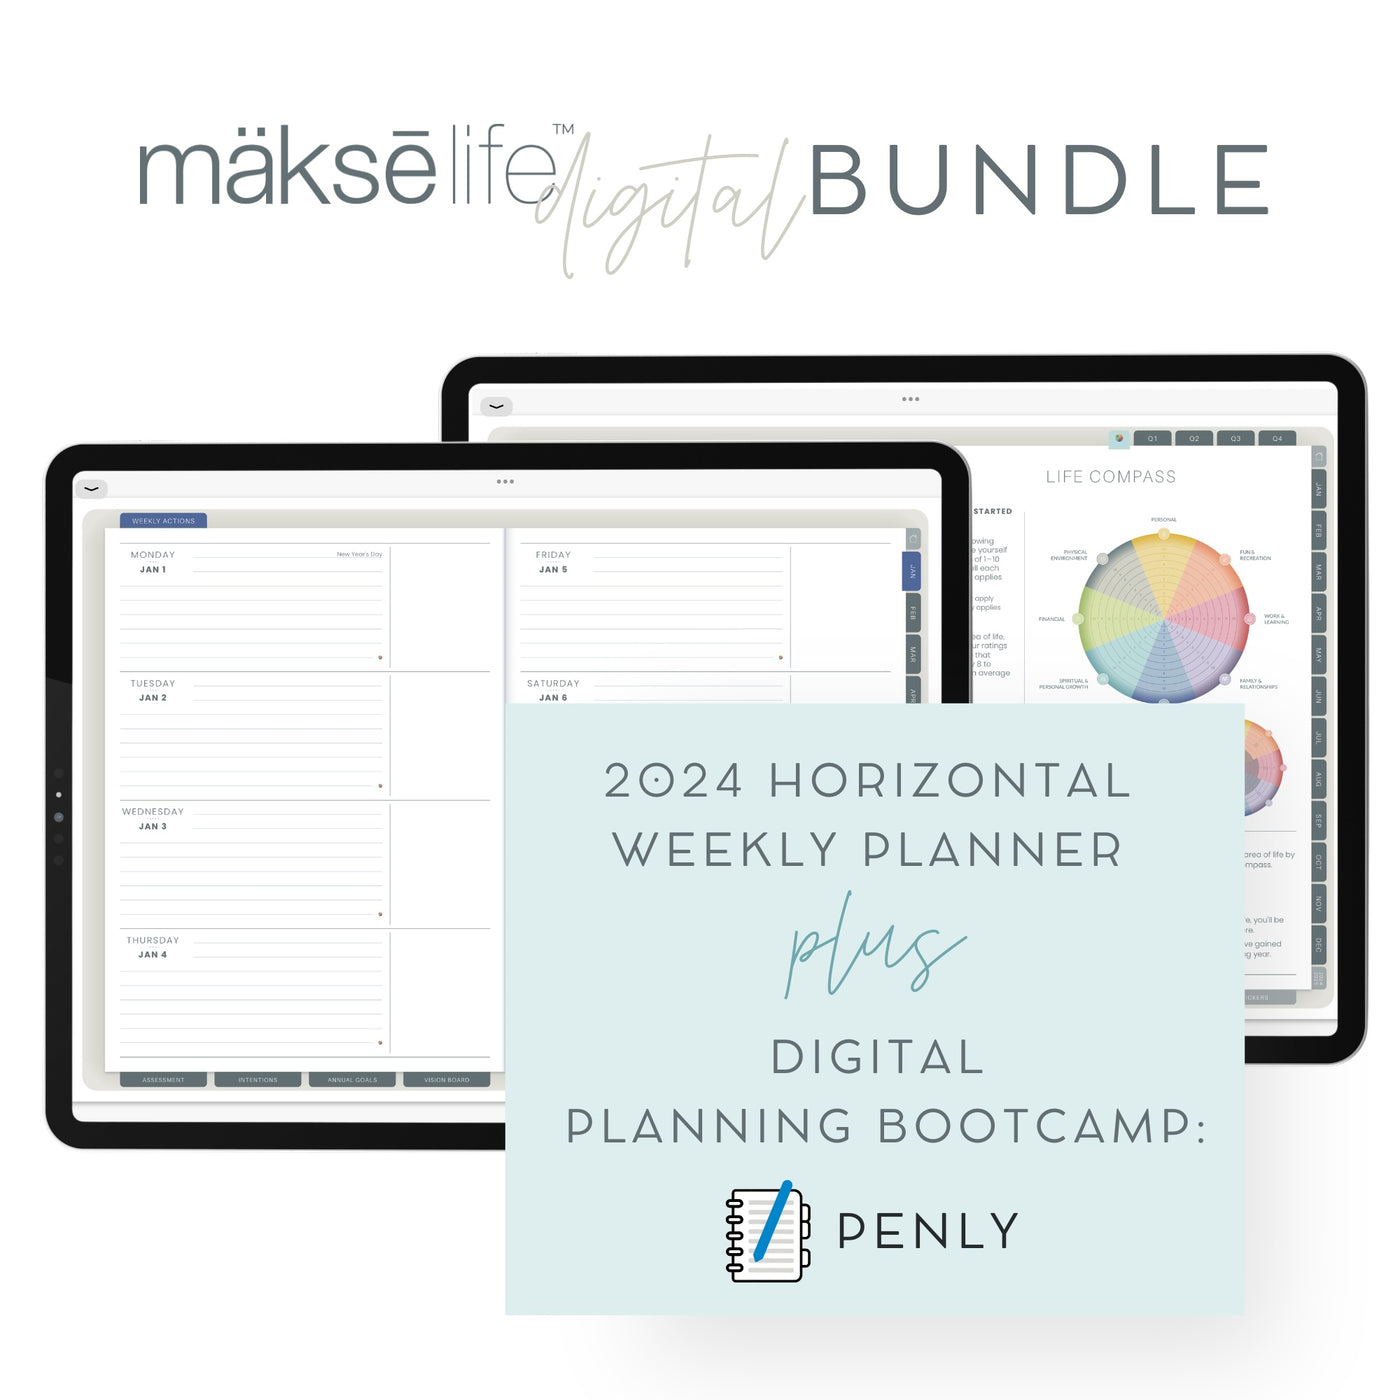 Digital Planning Bundle: Android/Penly + Digital Horizontal Weekly Planner